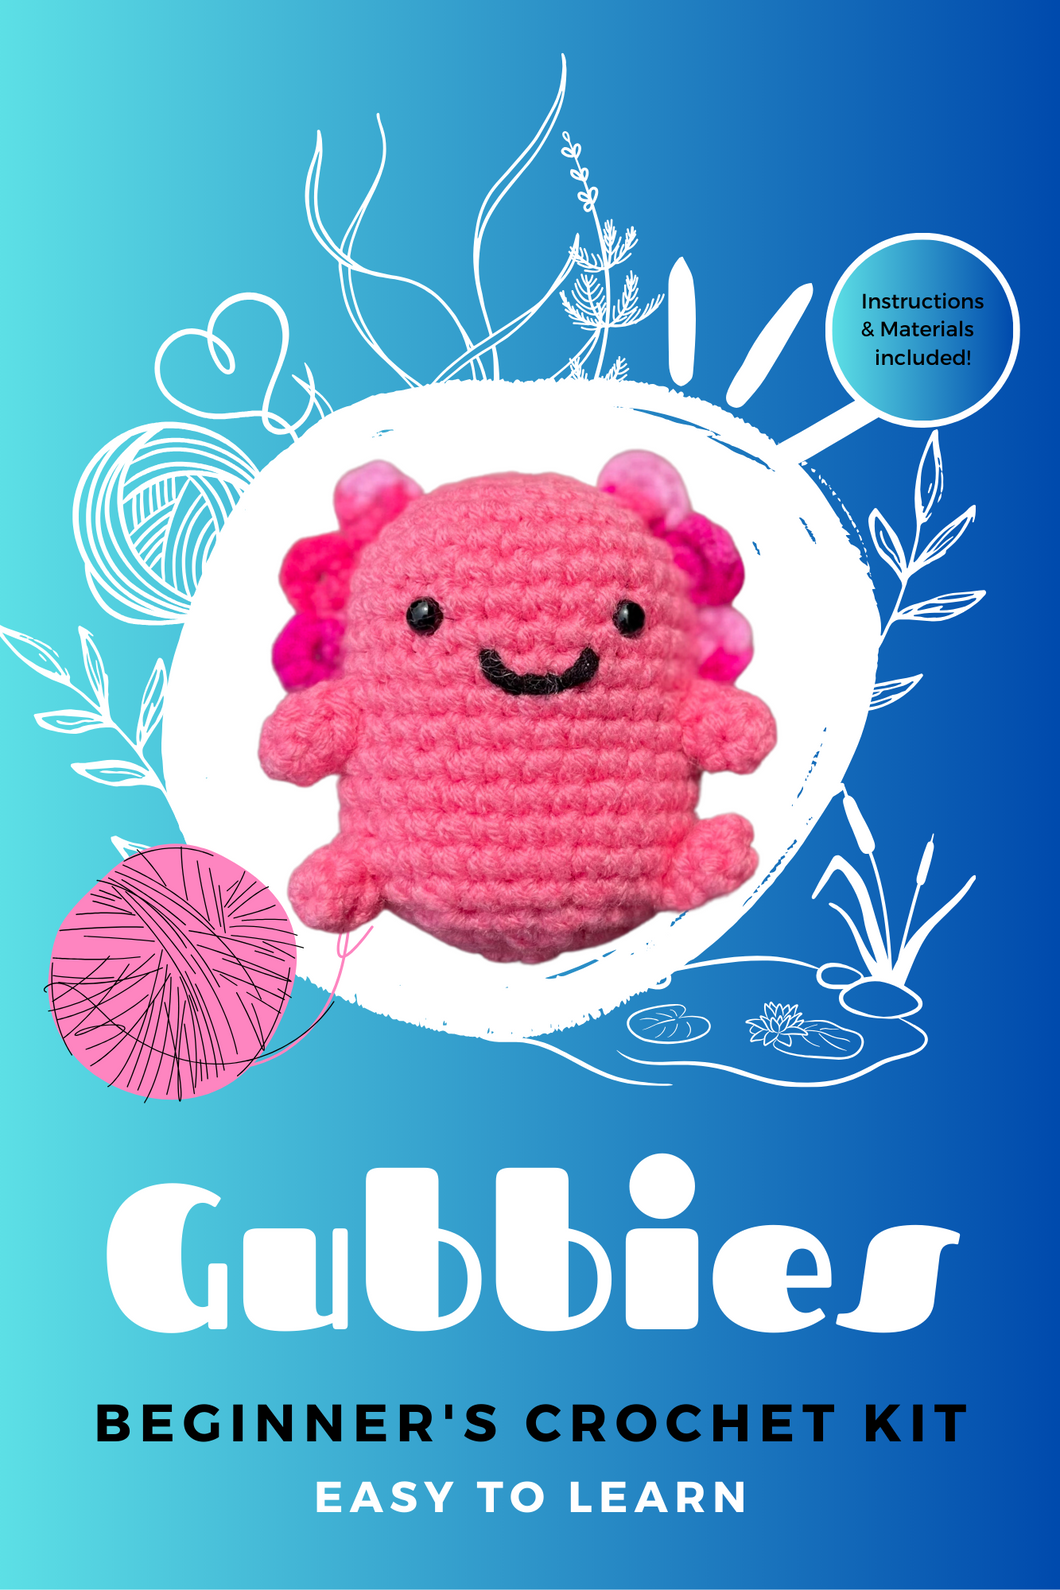 Gubbies: Axolotl